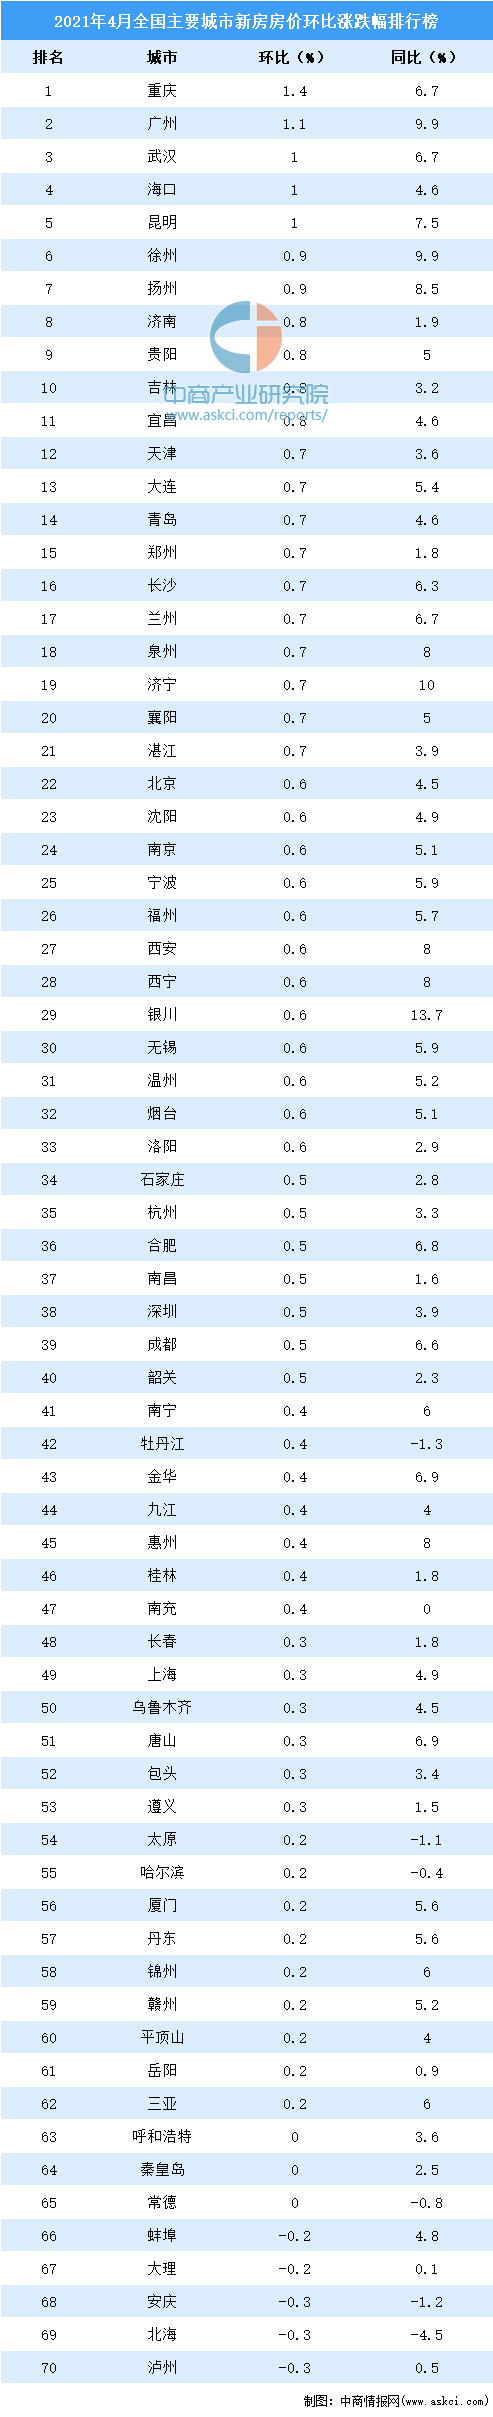 重庆个人写真排行_2020年重庆各区县GDP排行榜:8个区县GDP总量超千亿(图)